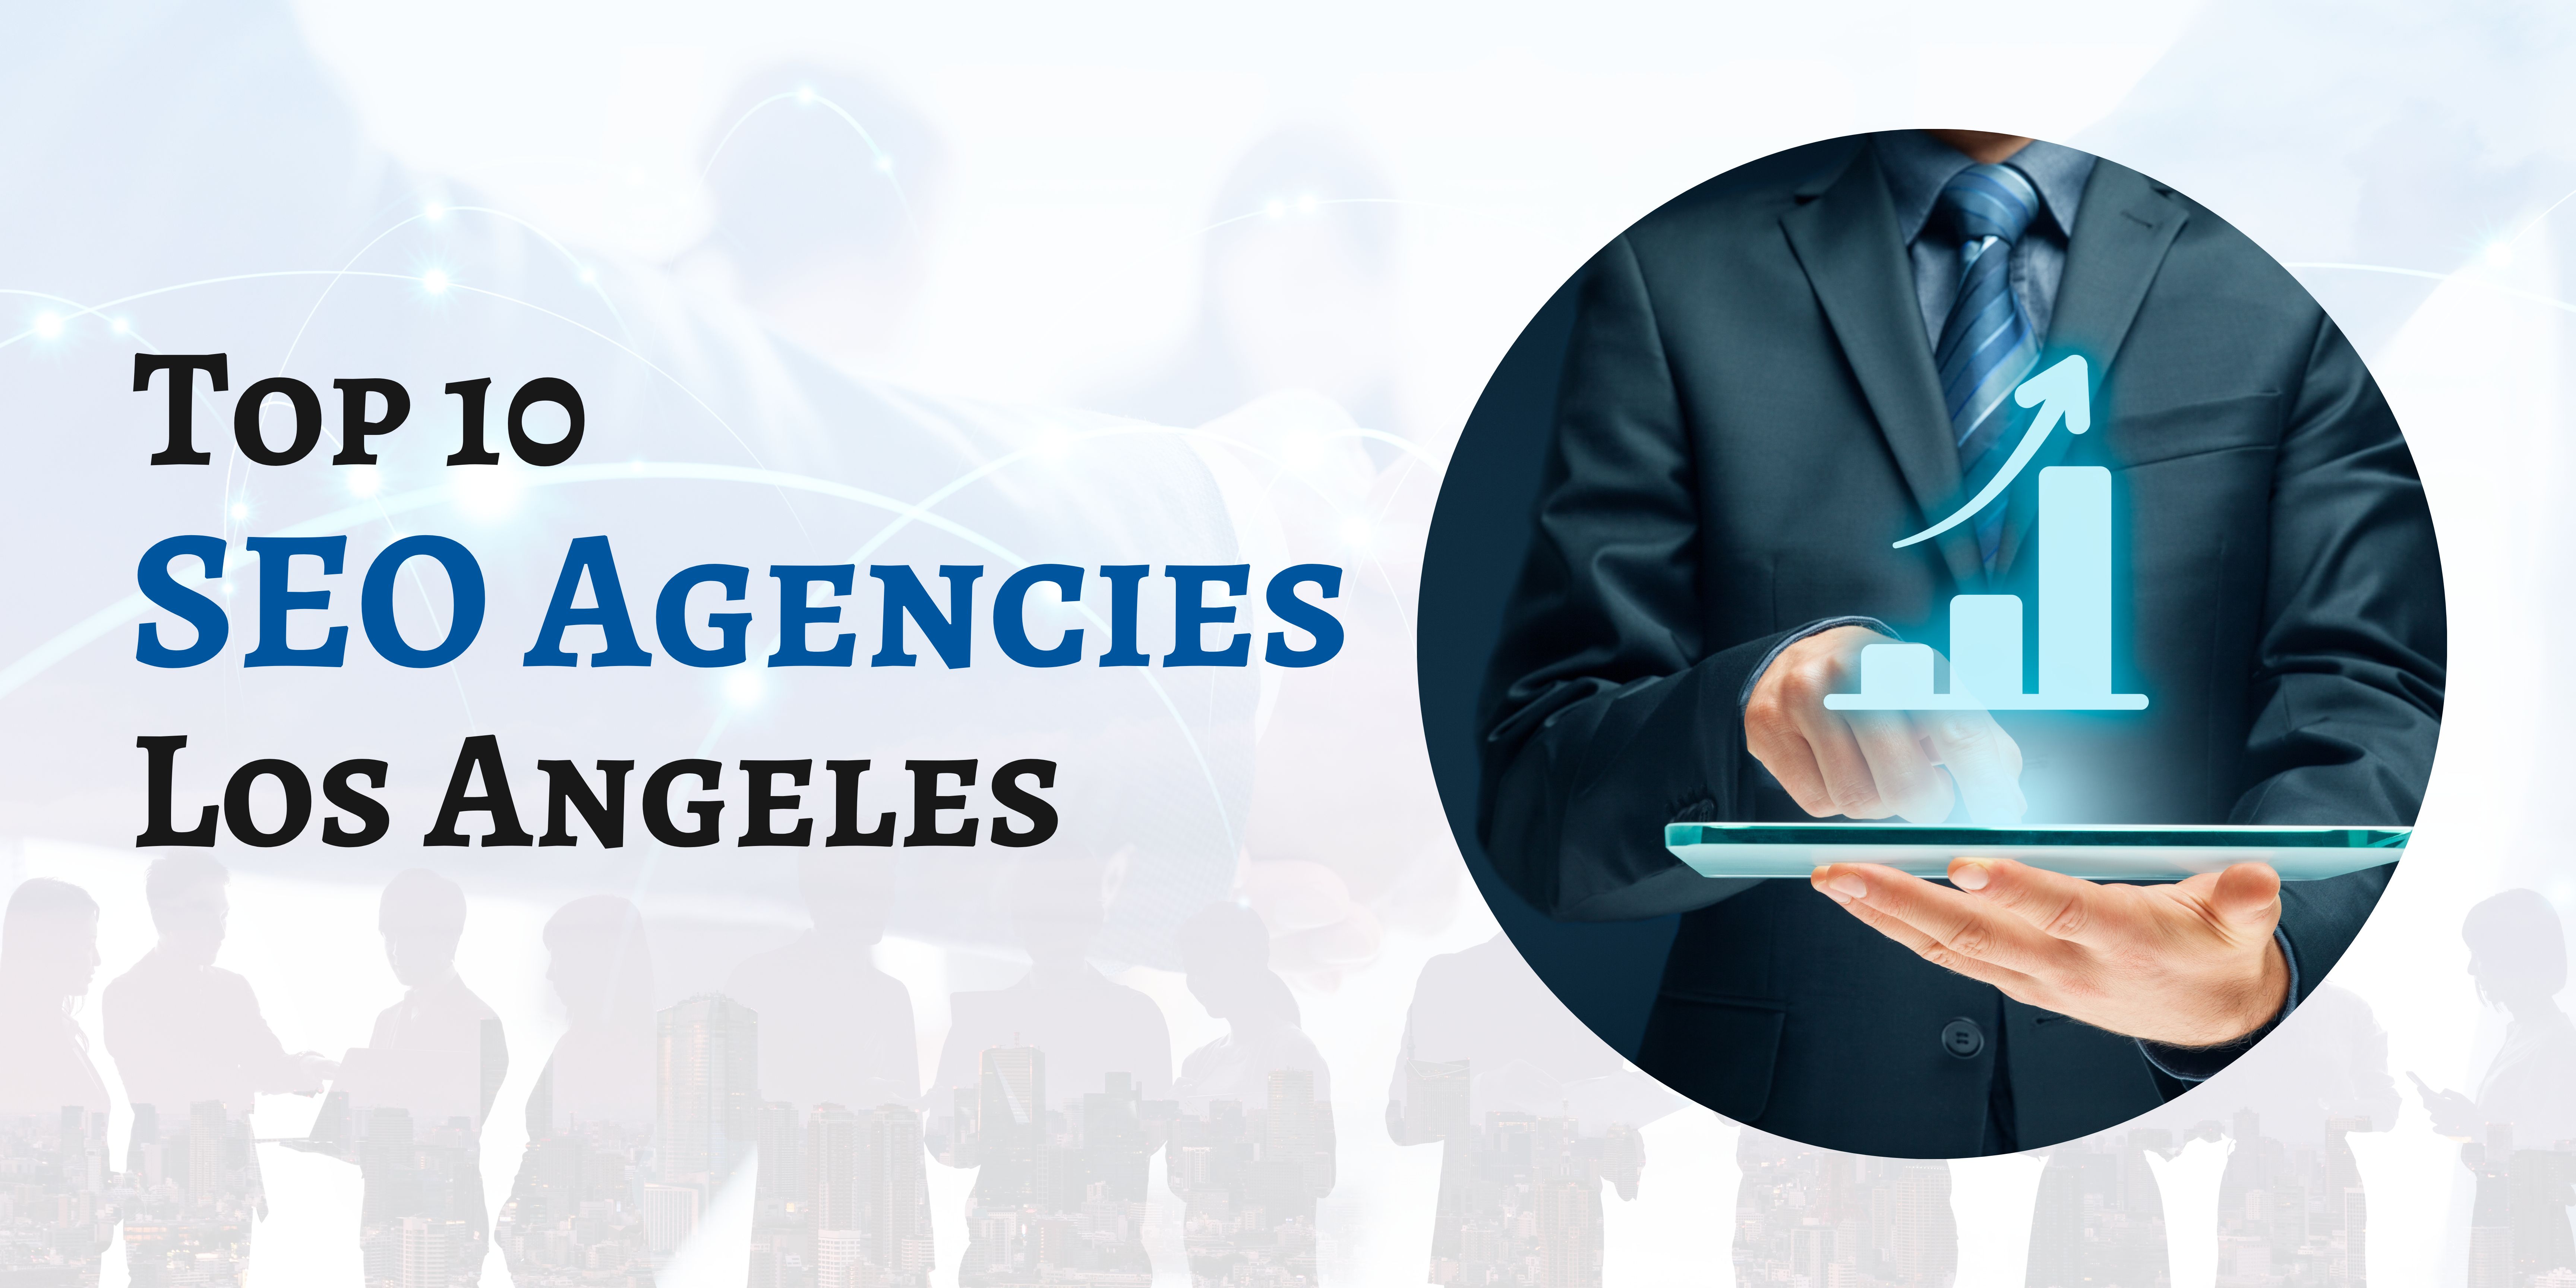 SEO Agencies Los Angeles